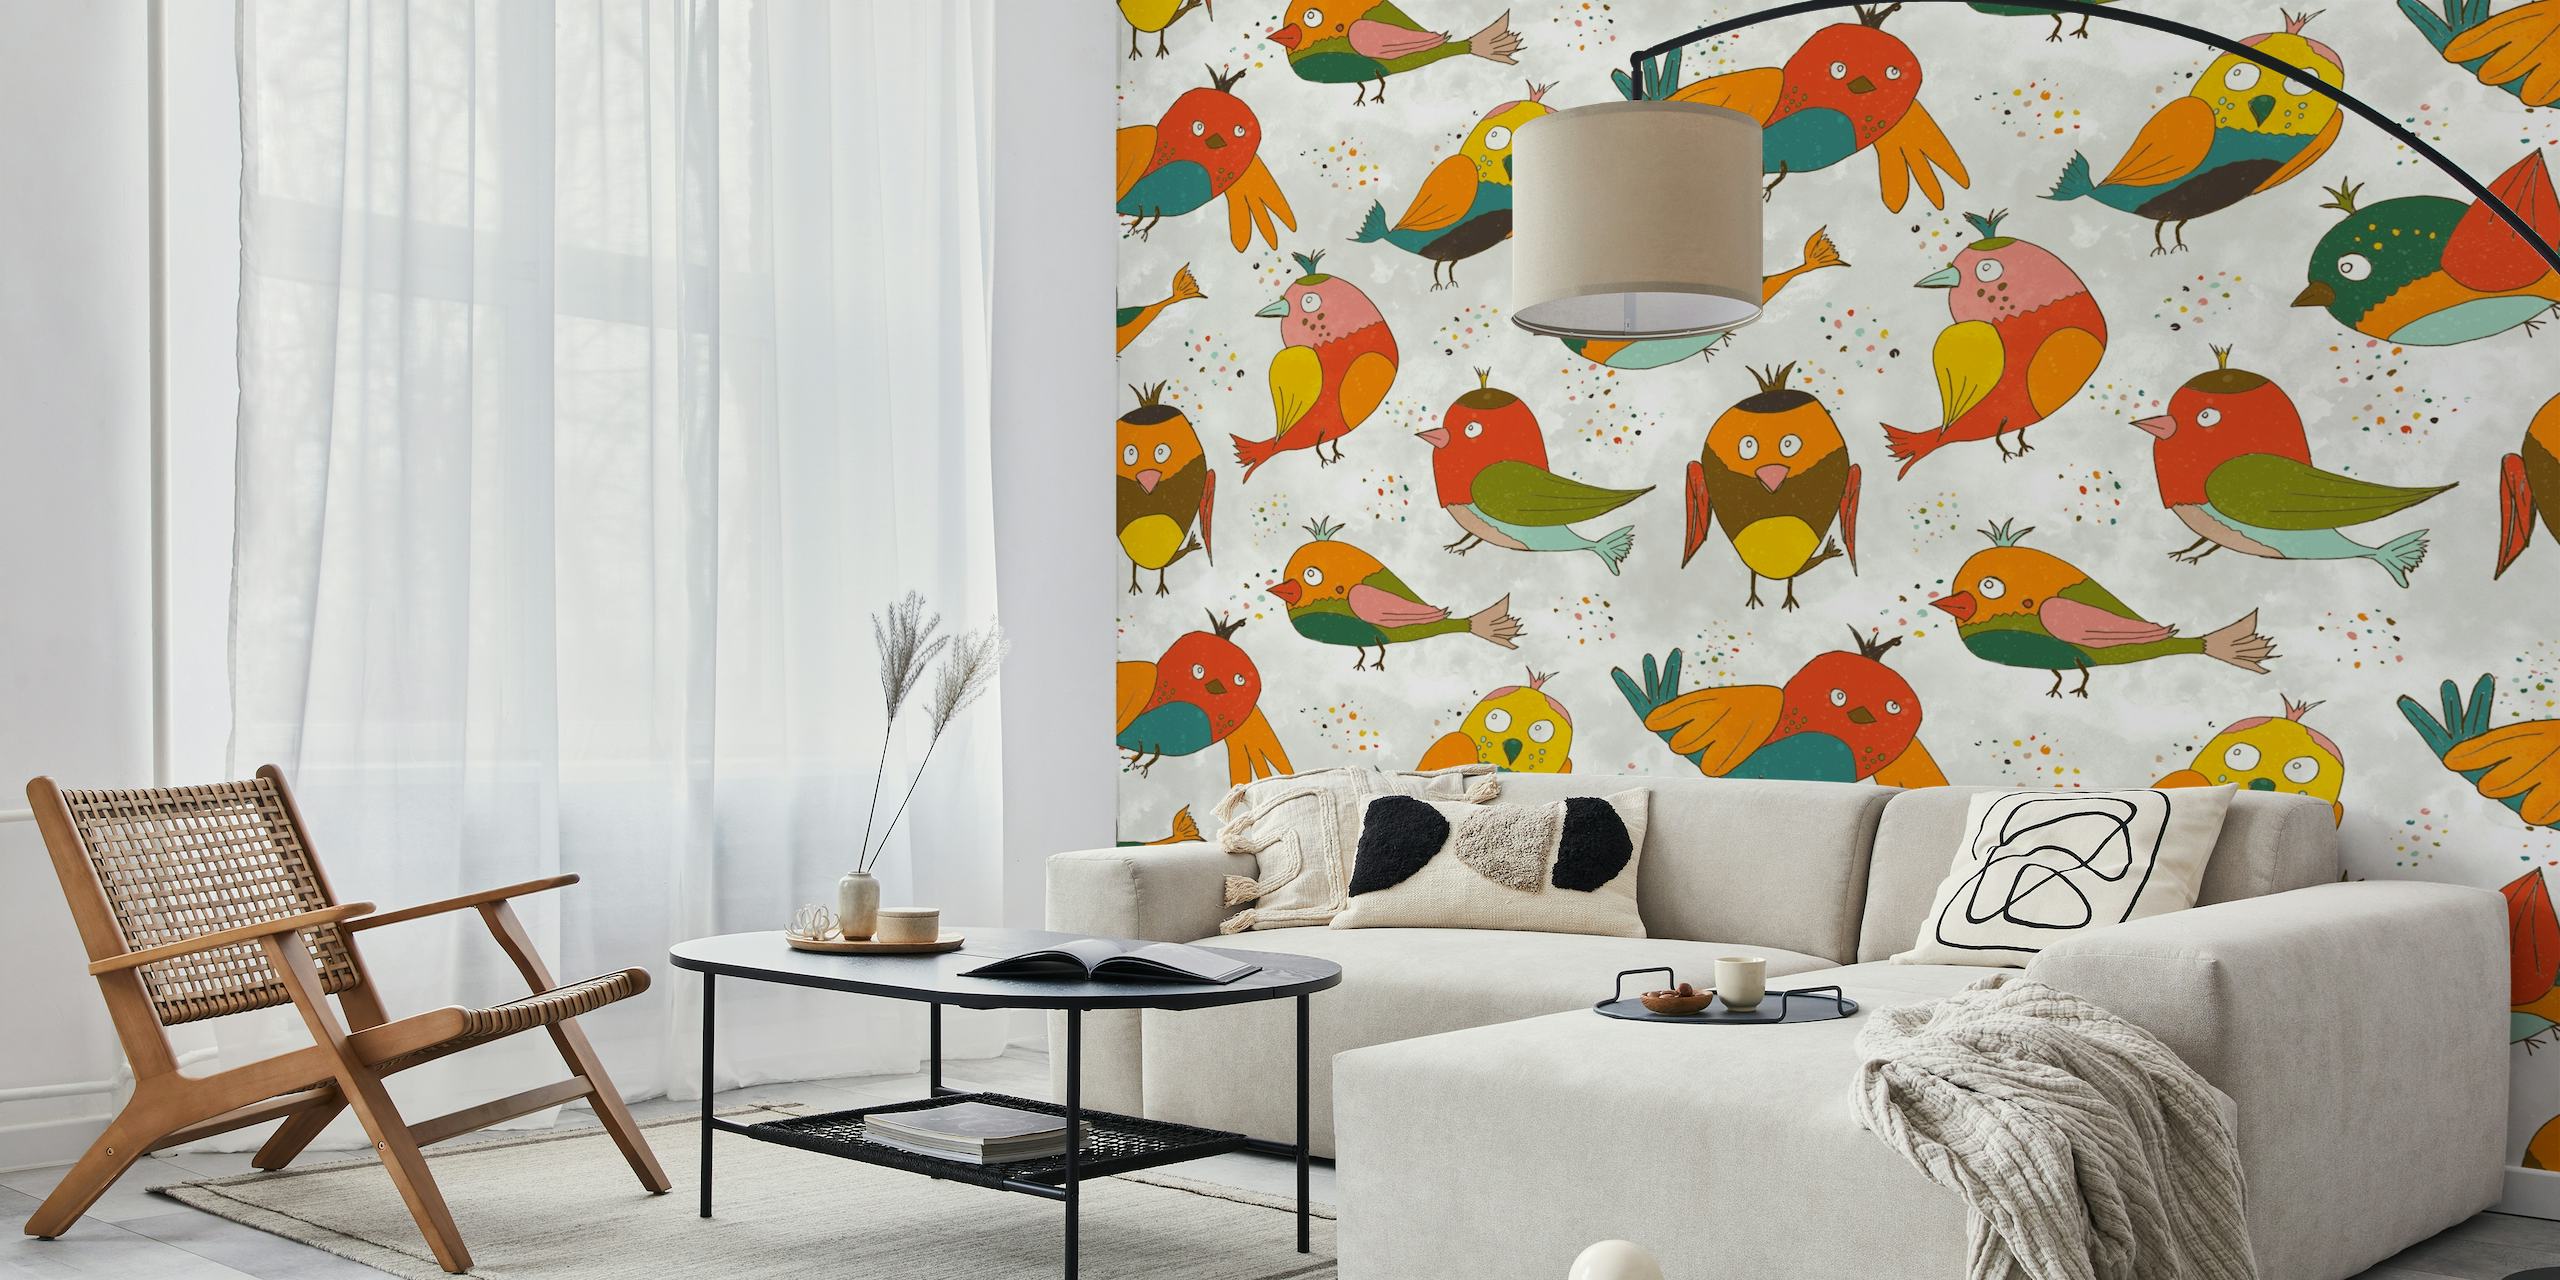 Illustration colorée d'une fresque murale de pinsons de printemps et d'oiseaux canaris avec des éléments floraux